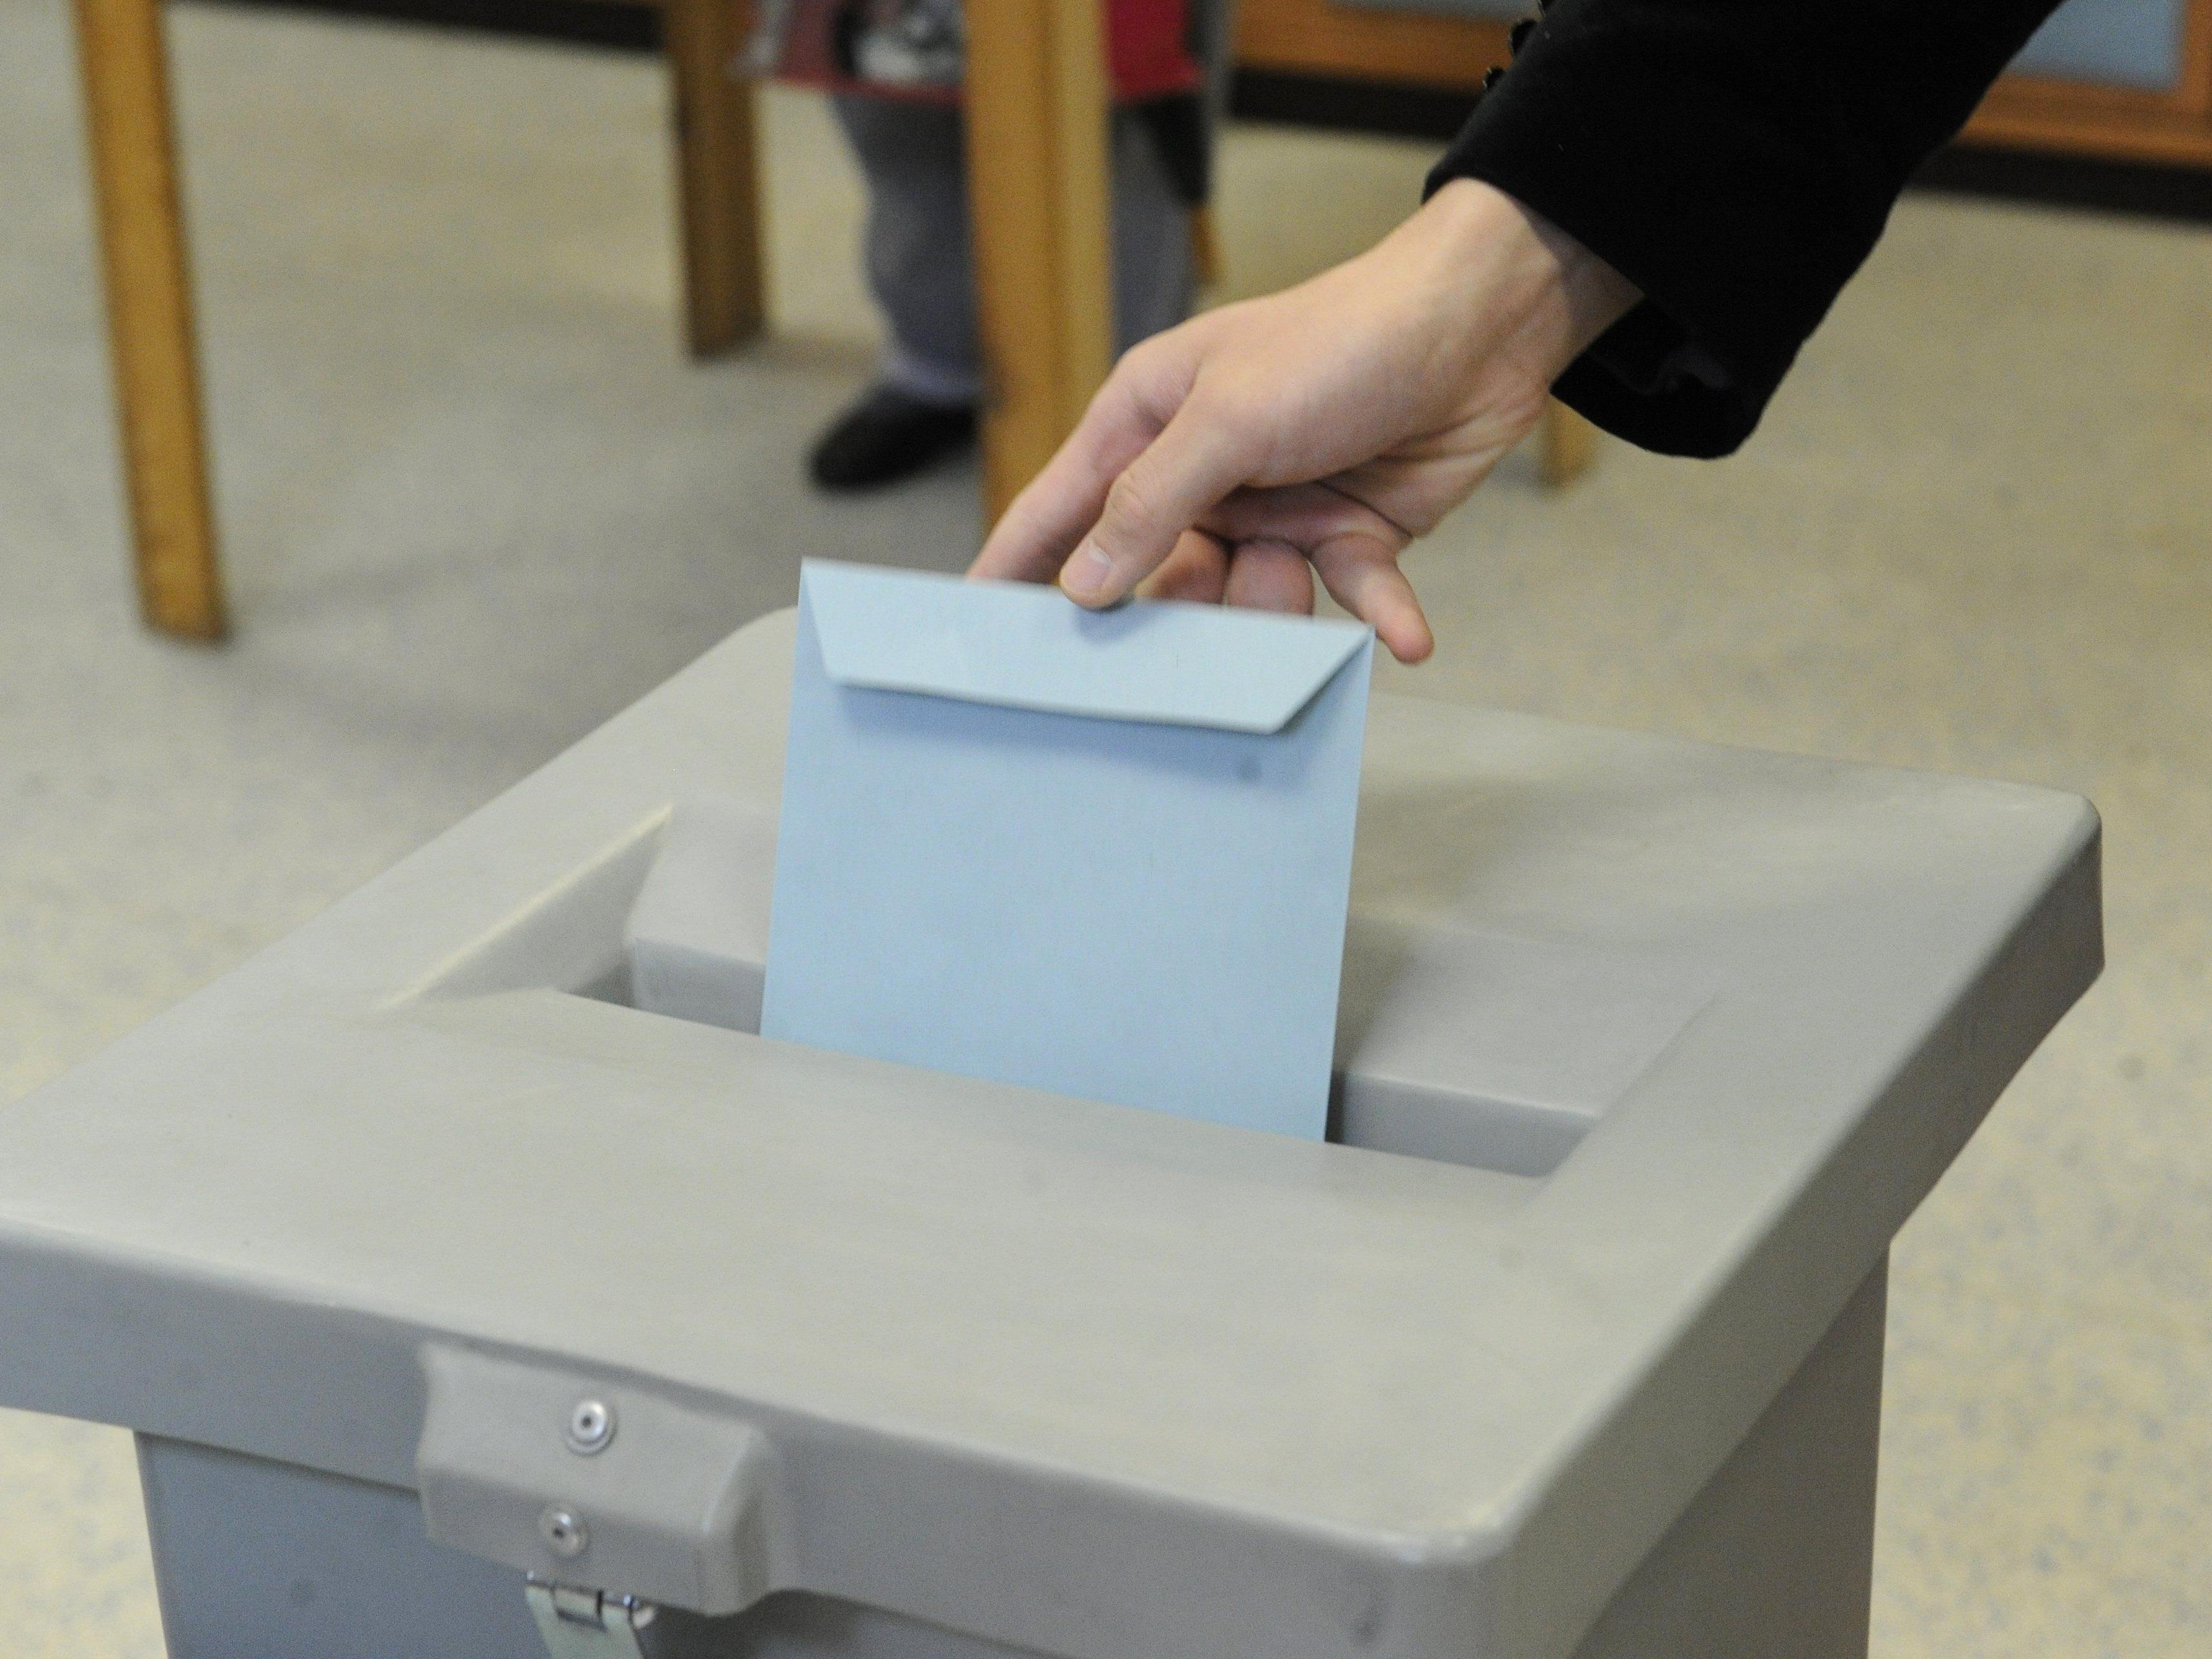 Spätestens am 4. Mai soll der Stimmzettel zur Burgenland-Wahl stehen.